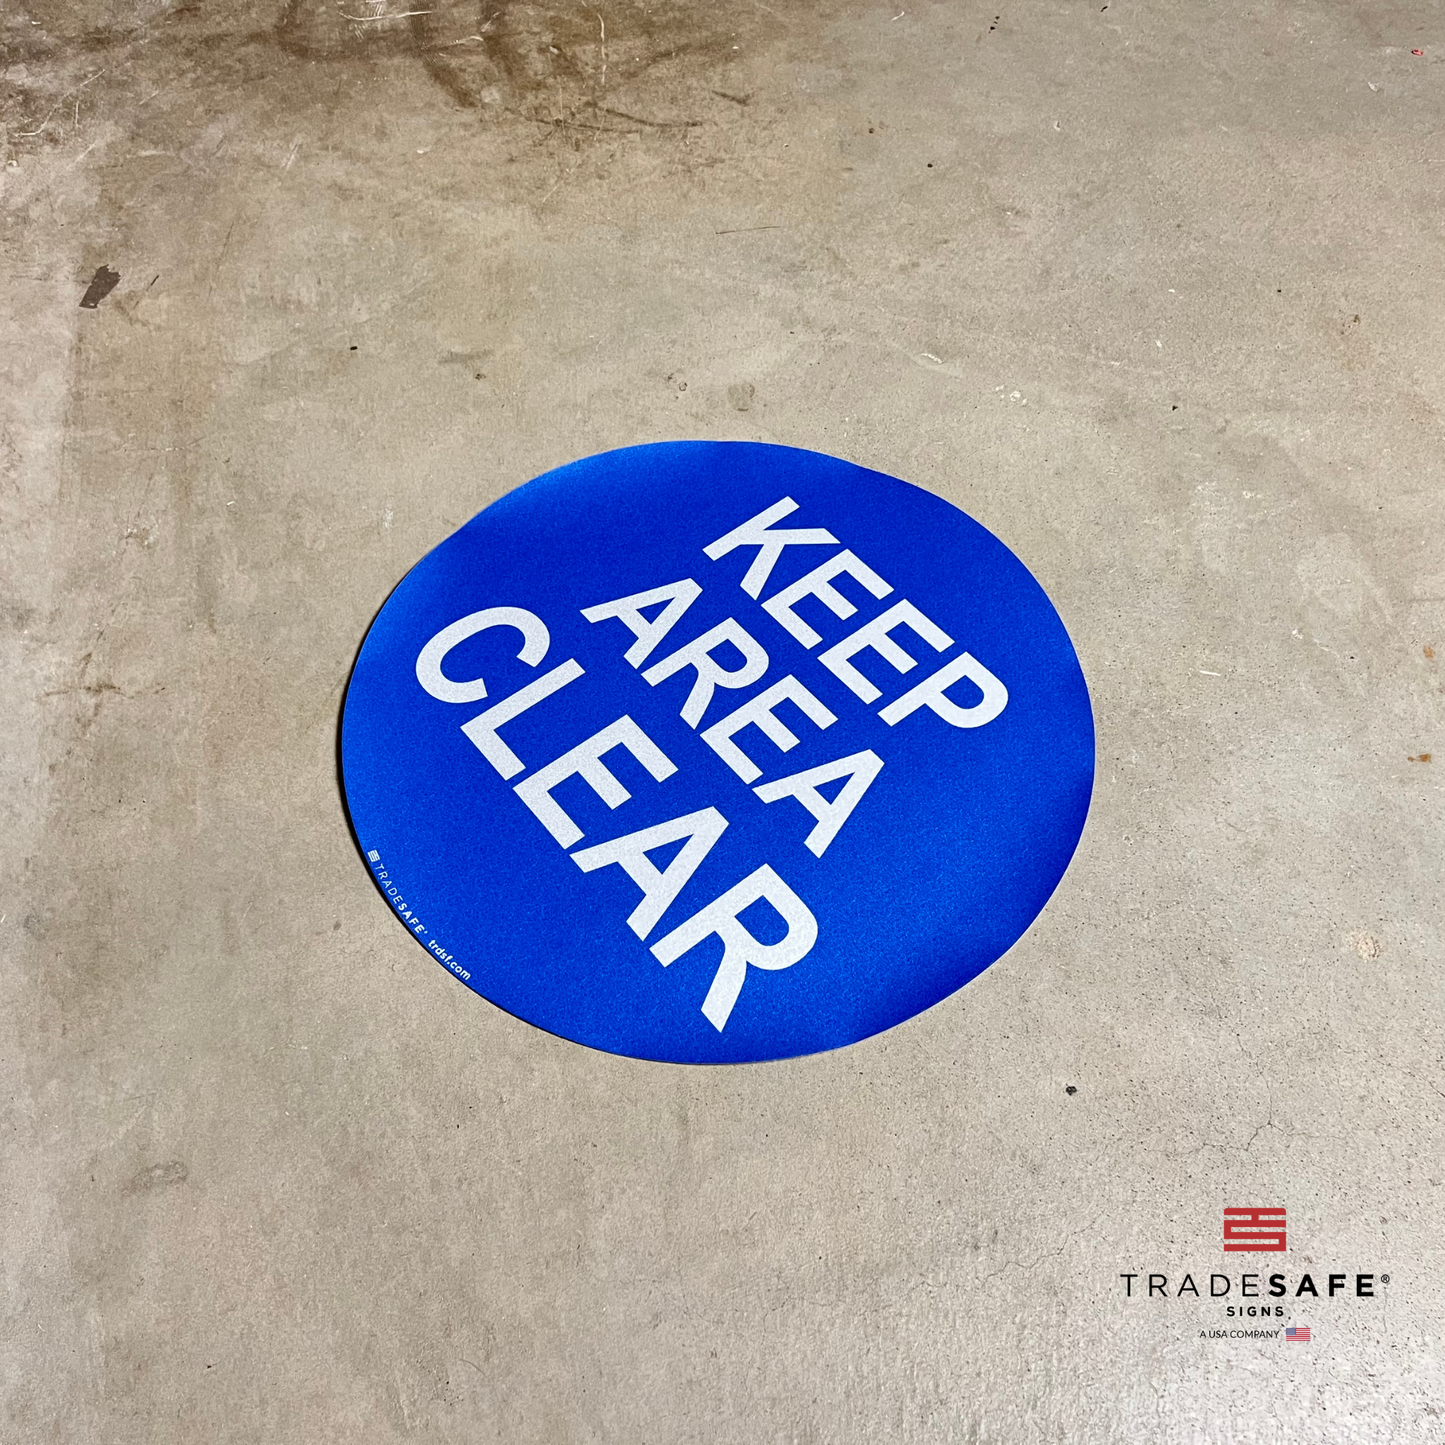 keep area clear sign on floor